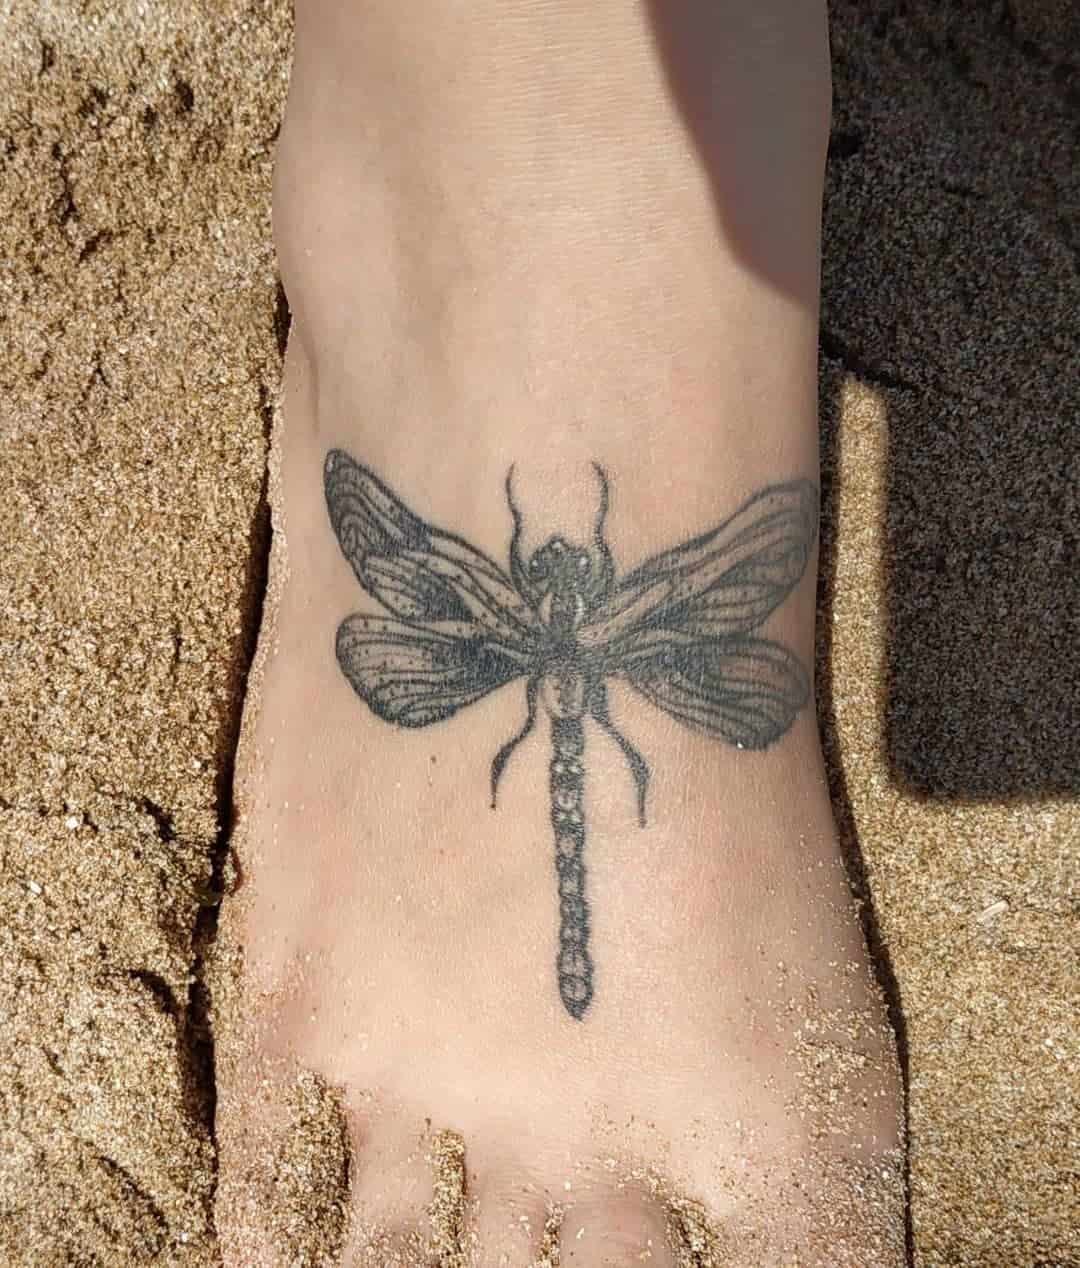 Tatuaje de libélula en el pie